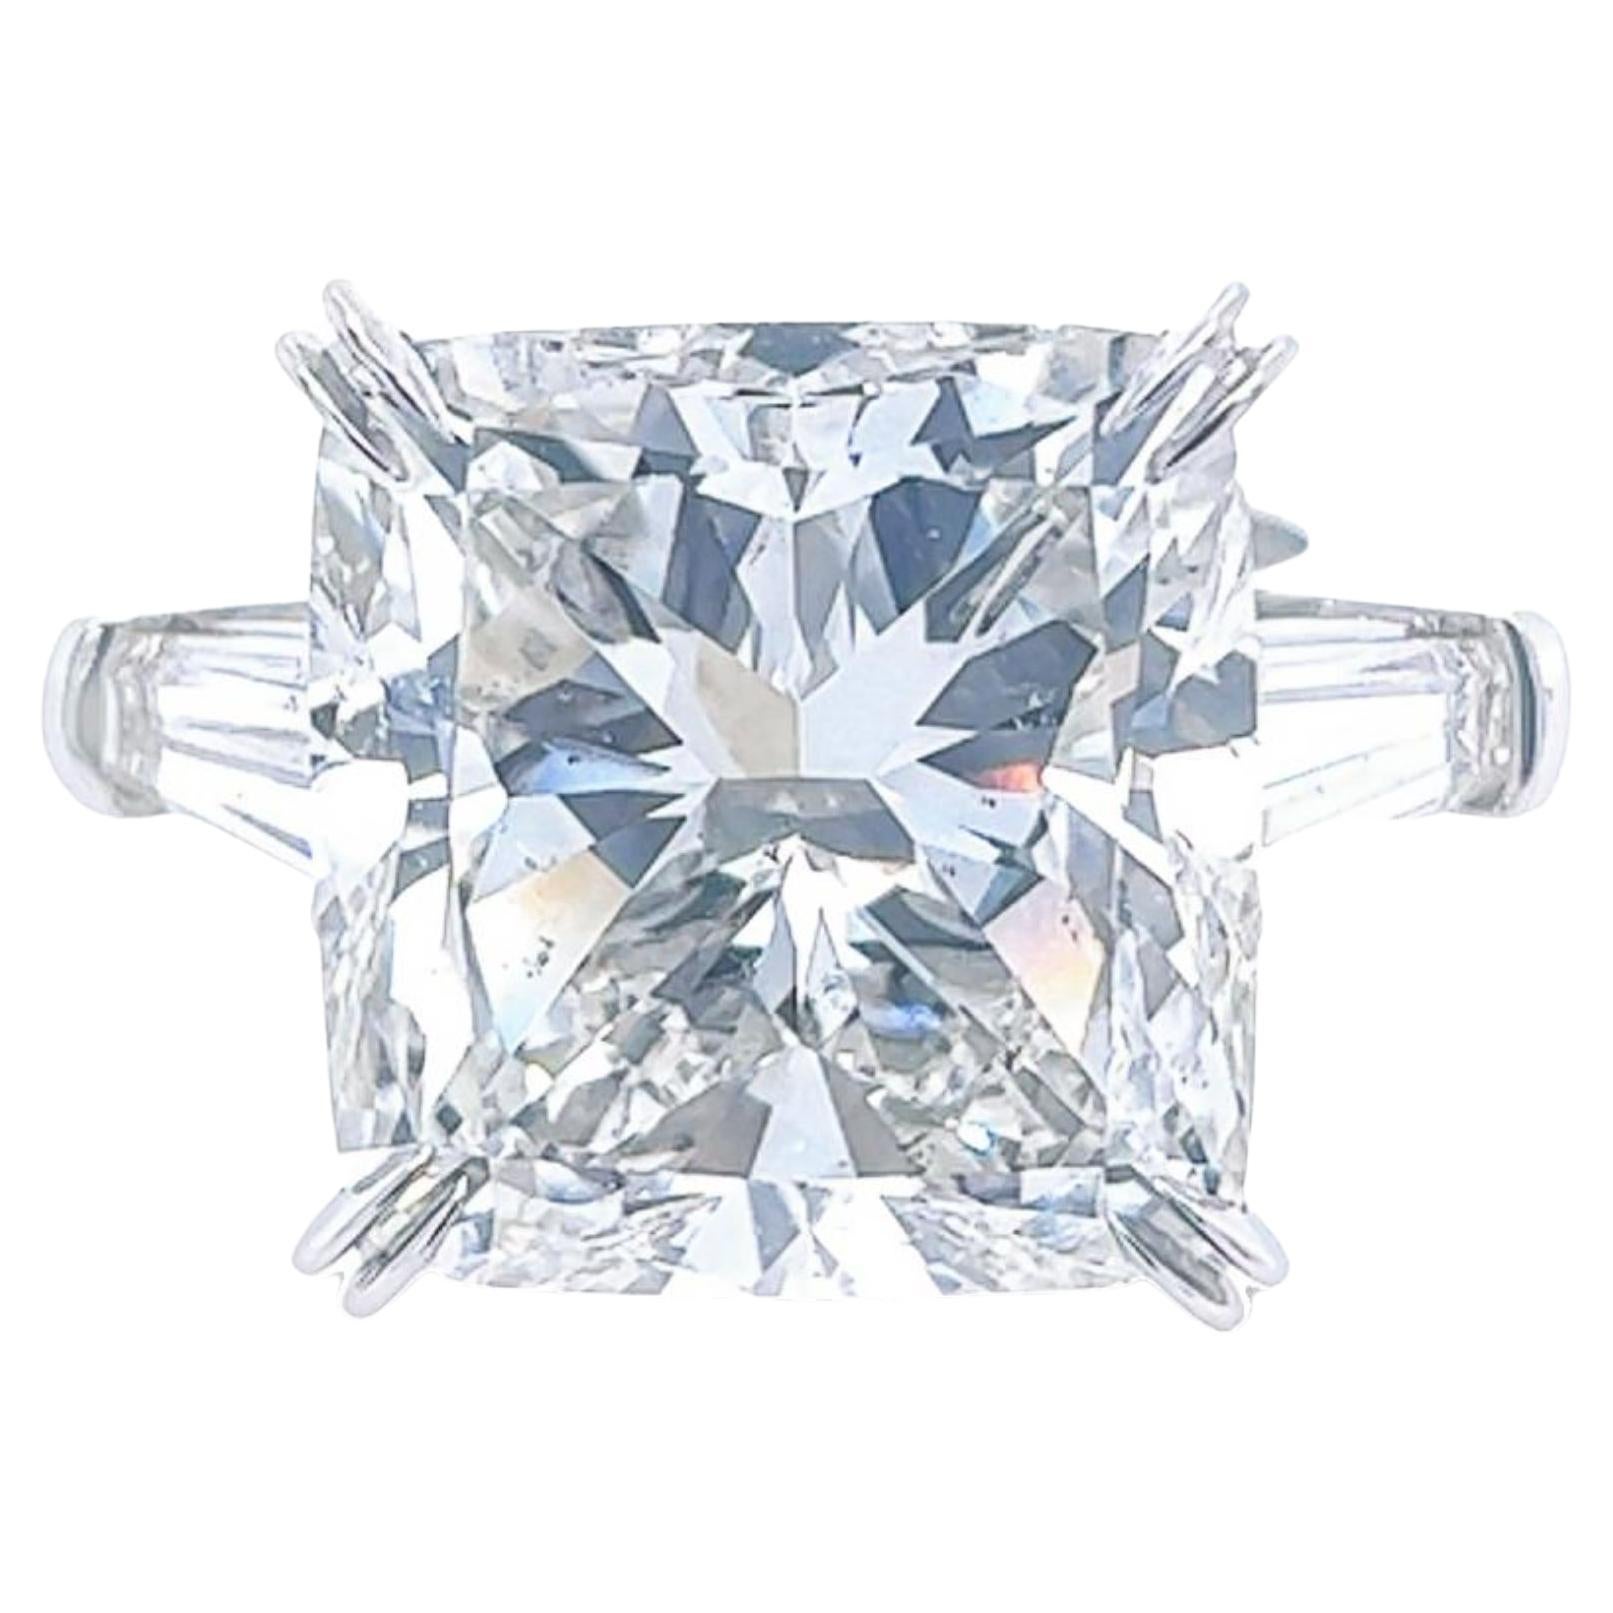 David Rosenberg Bague de fiançailles à 3 pierres en diamants taille coussin de 15,71 carats certifiés GIA